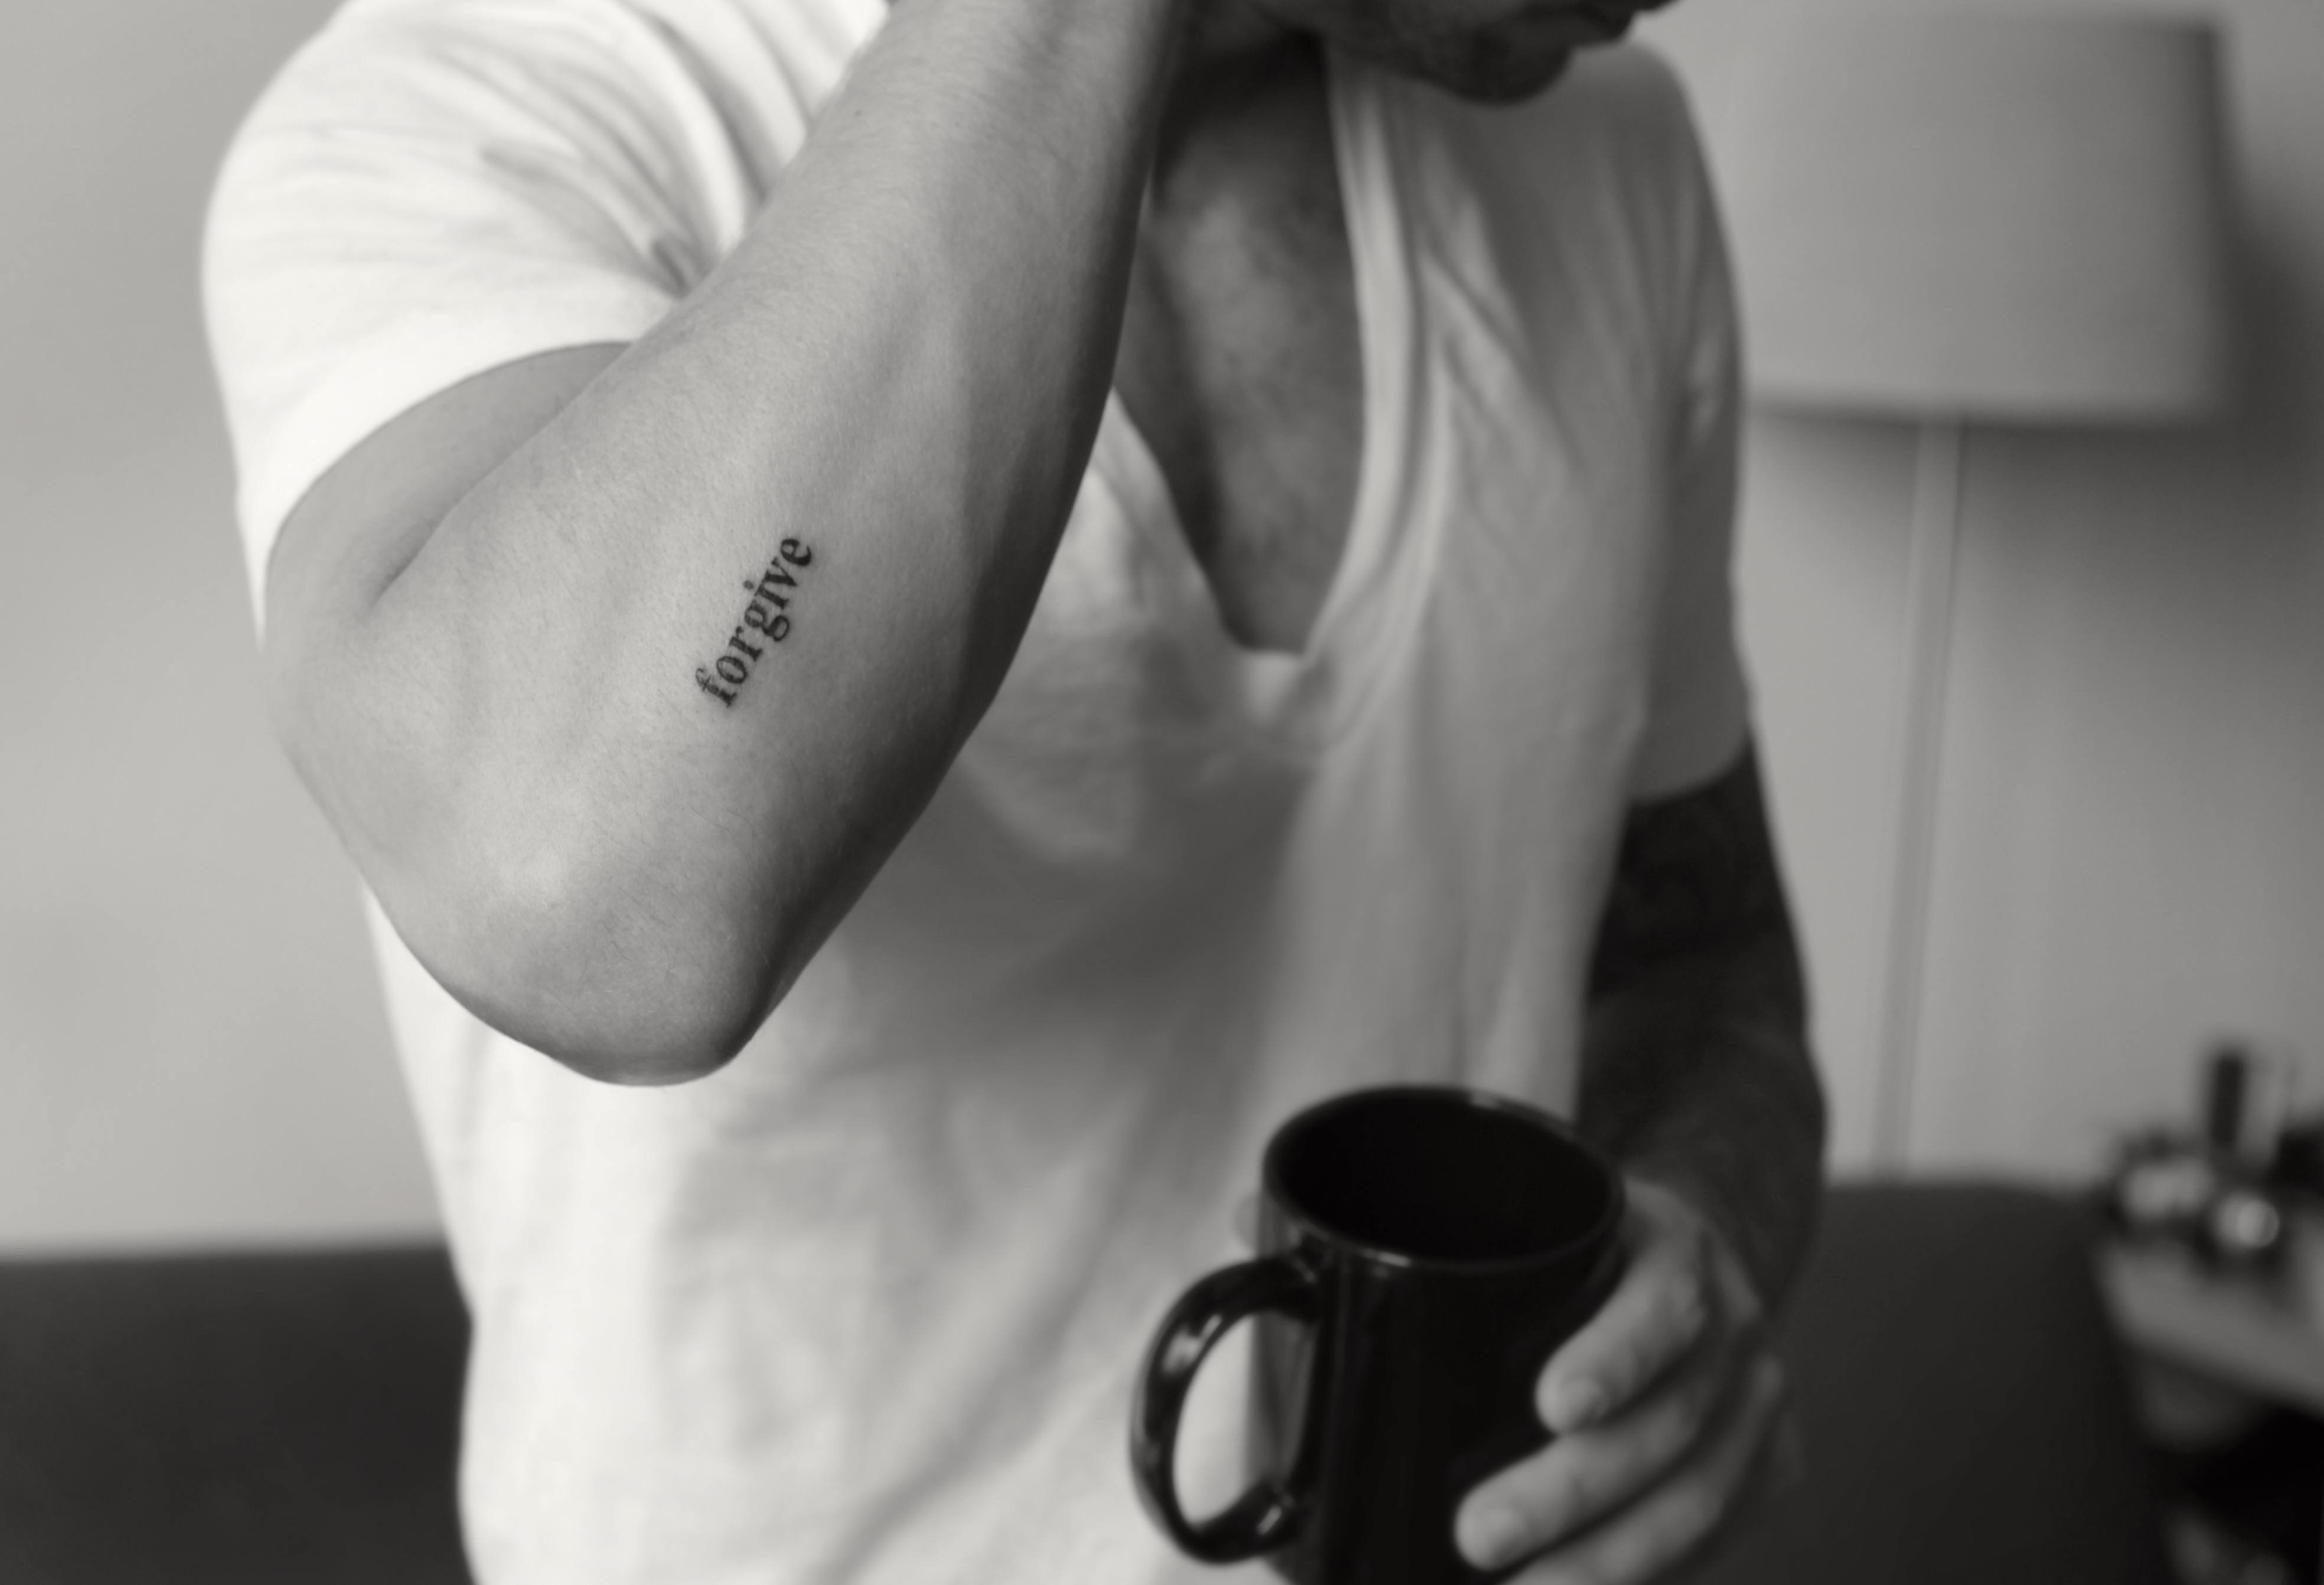 Татуировки на руке для мужчин надписи с переводом, их значение, красивые со смыслом, кельтский узор, маленькие, на всю руку, эскизы